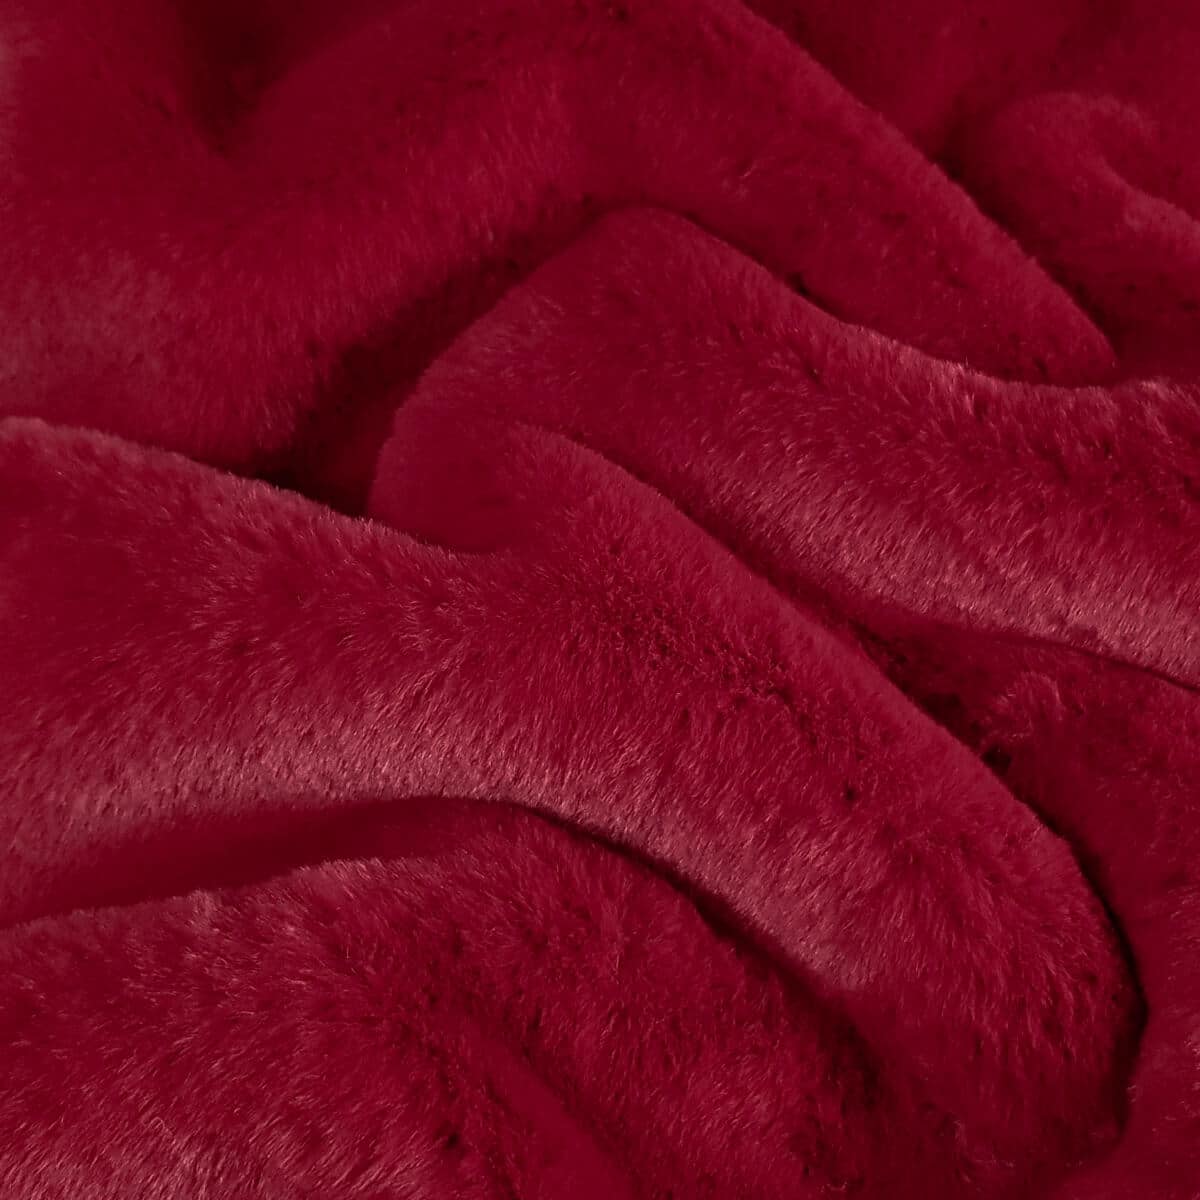 sztuczne futro czerwone malinowe miekkie krotkie wlosieB